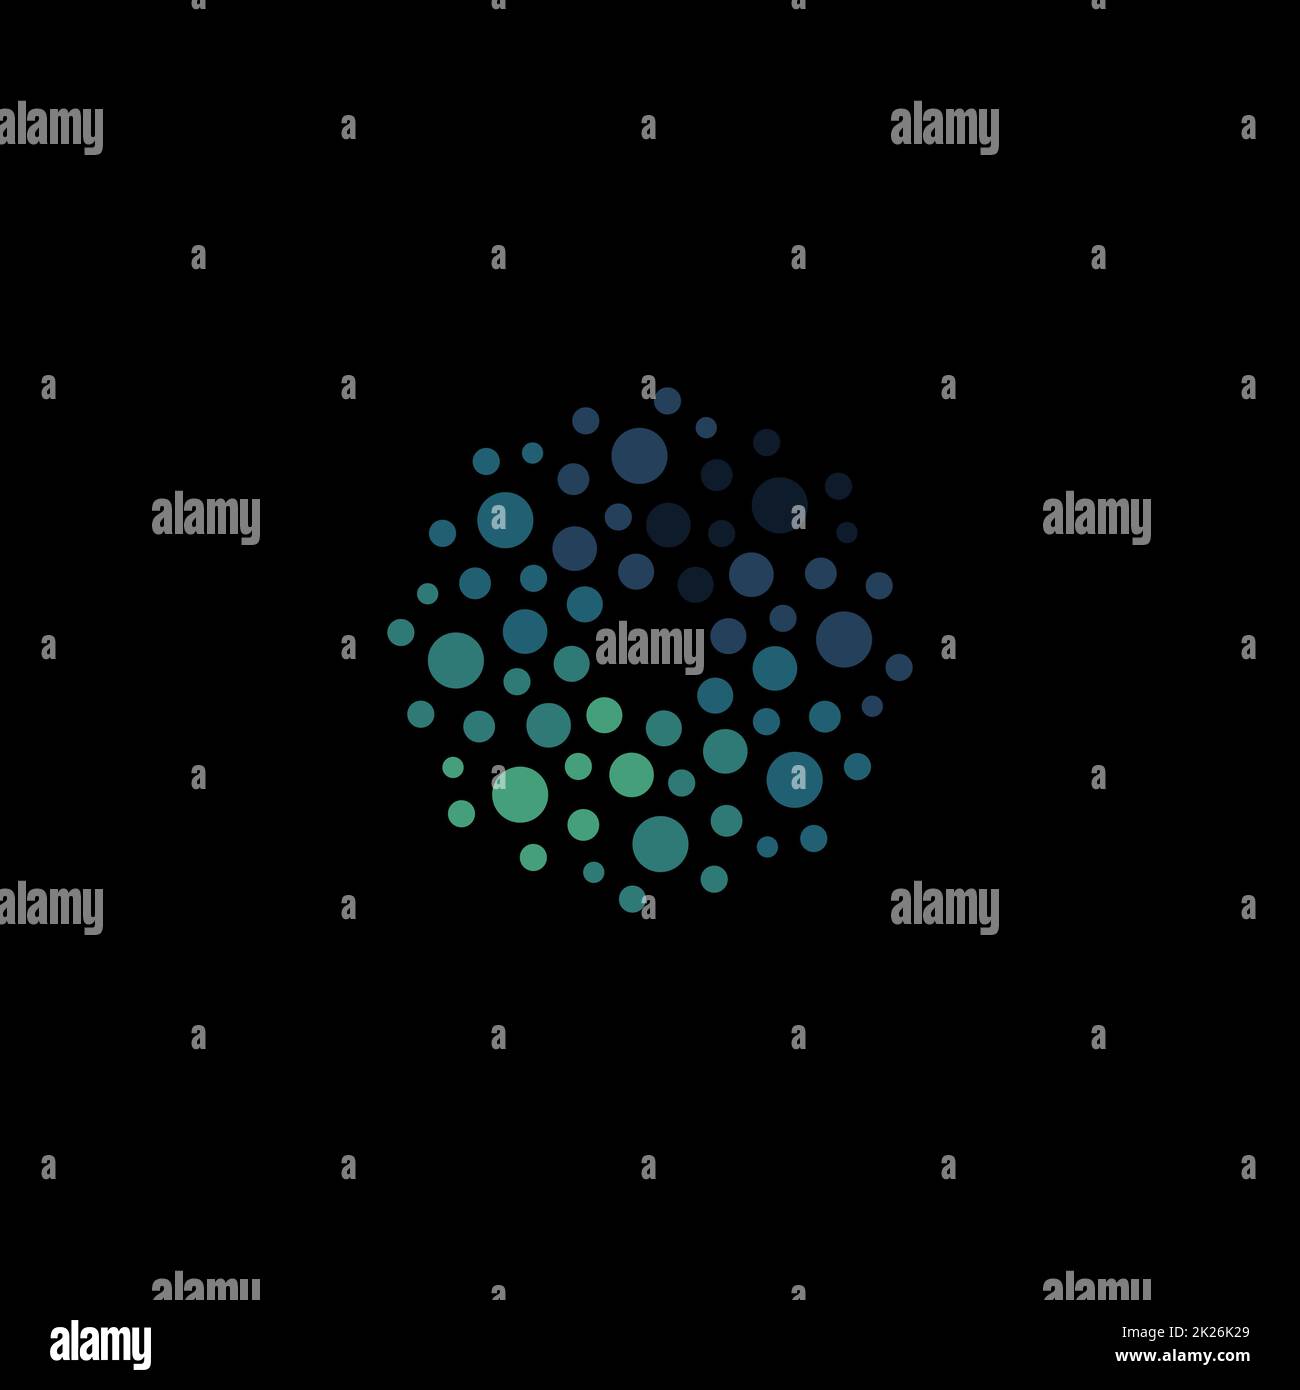 Isoliertes, abstraktes, rundes blaues Logo, gepunktetes Logo, Vektordarstellung für Wasserelemente auf schwarzem Hintergrund Stockfoto